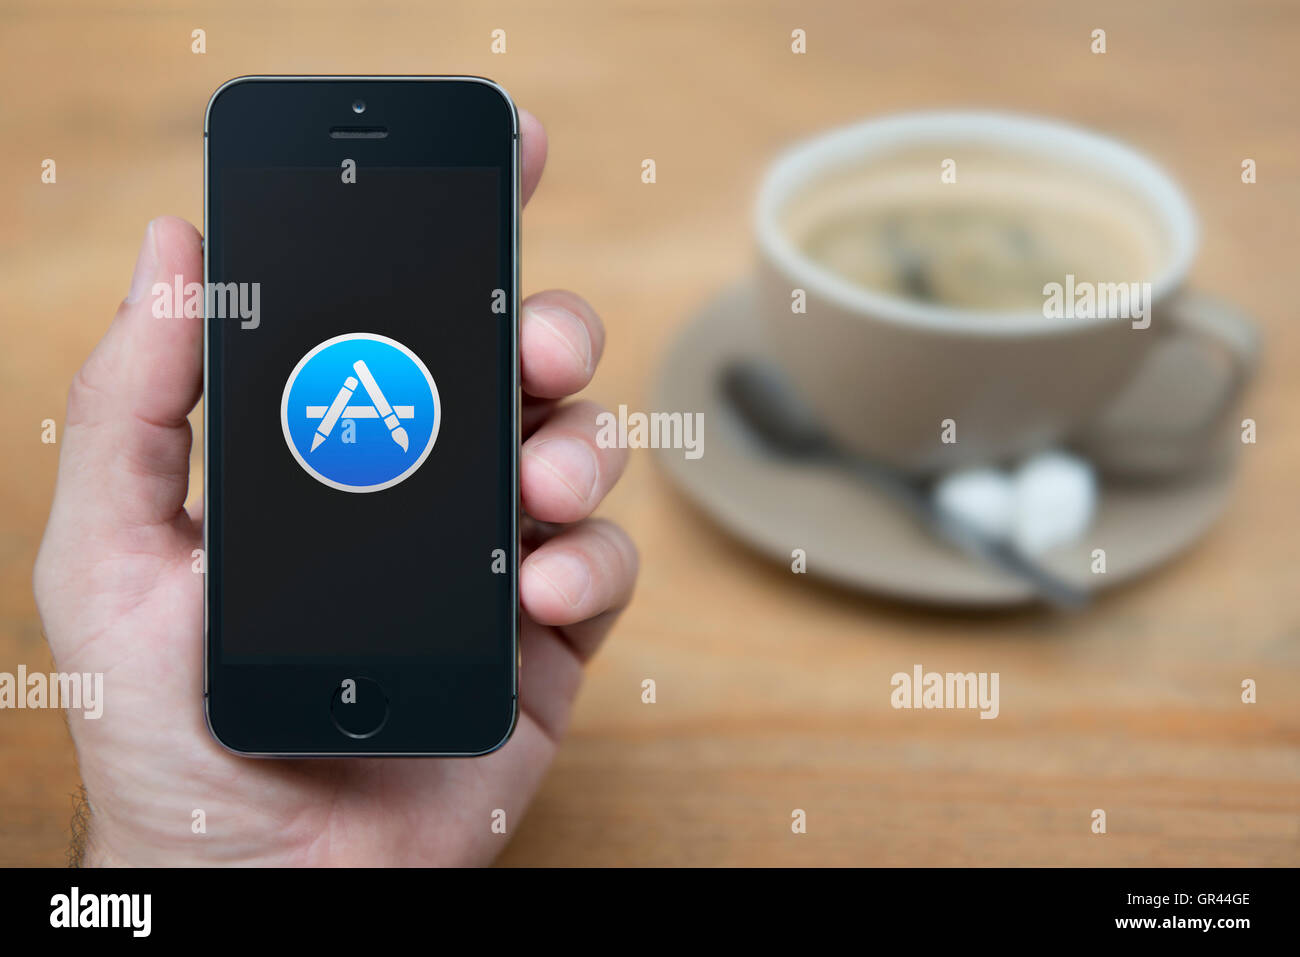 Un homme se penche sur son iPhone qui affiche le logo Apple App Store, tandis que sam avec une tasse de café (usage éditorial uniquement). Banque D'Images